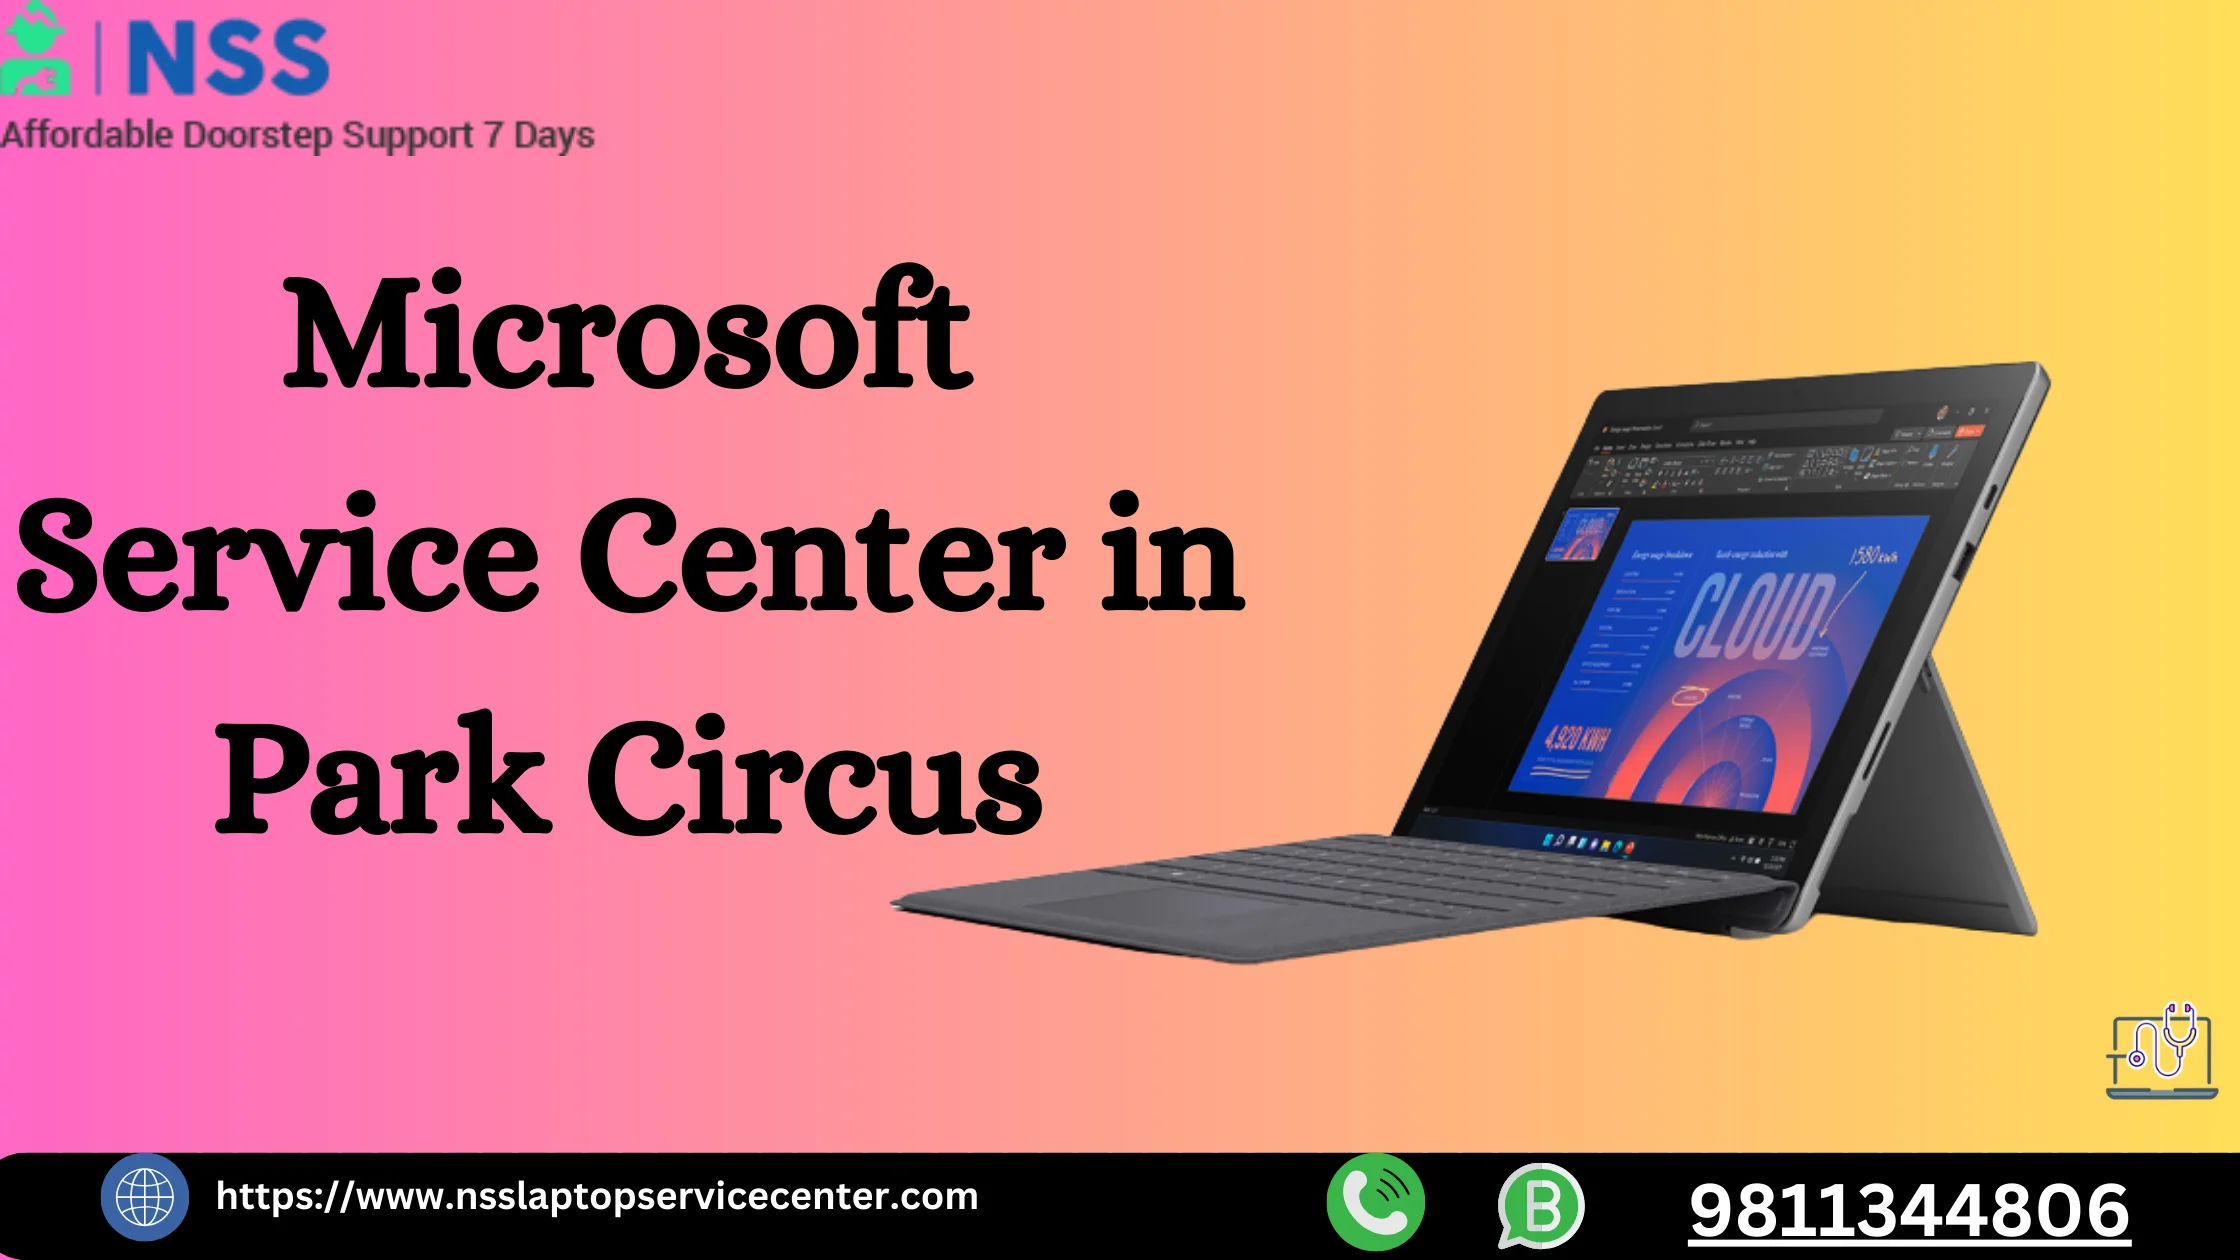 Microsoft Service Center in Park Circus Near Kolkata